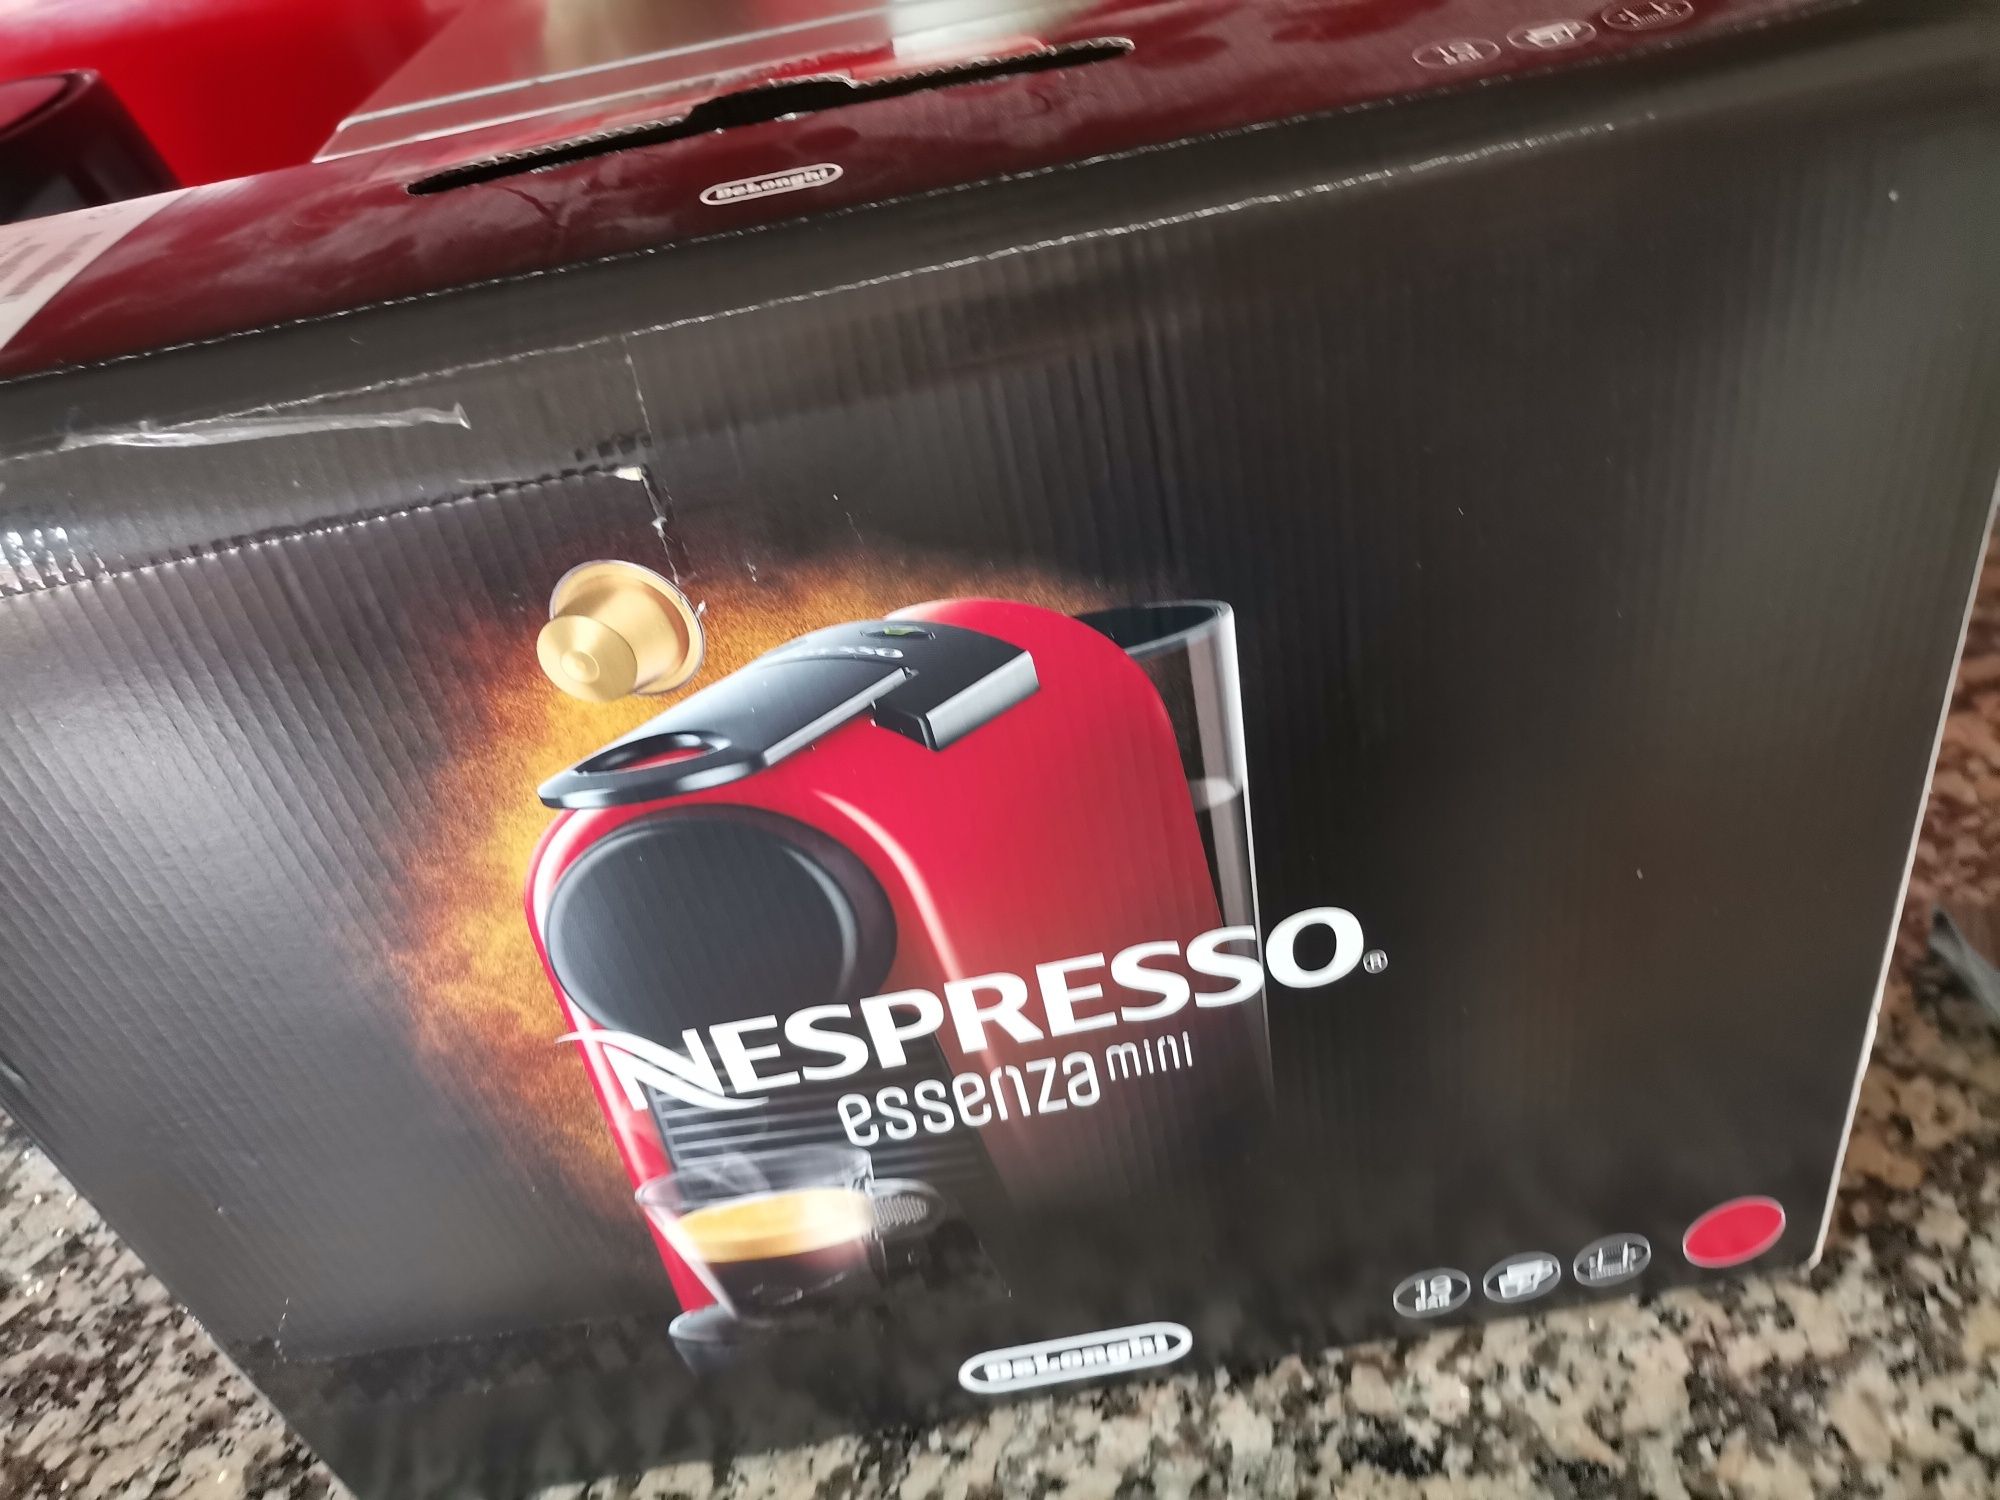 Vendo Máquina de Café Nespresso DeLonghi (COM PROBLEMA) + OFERTA